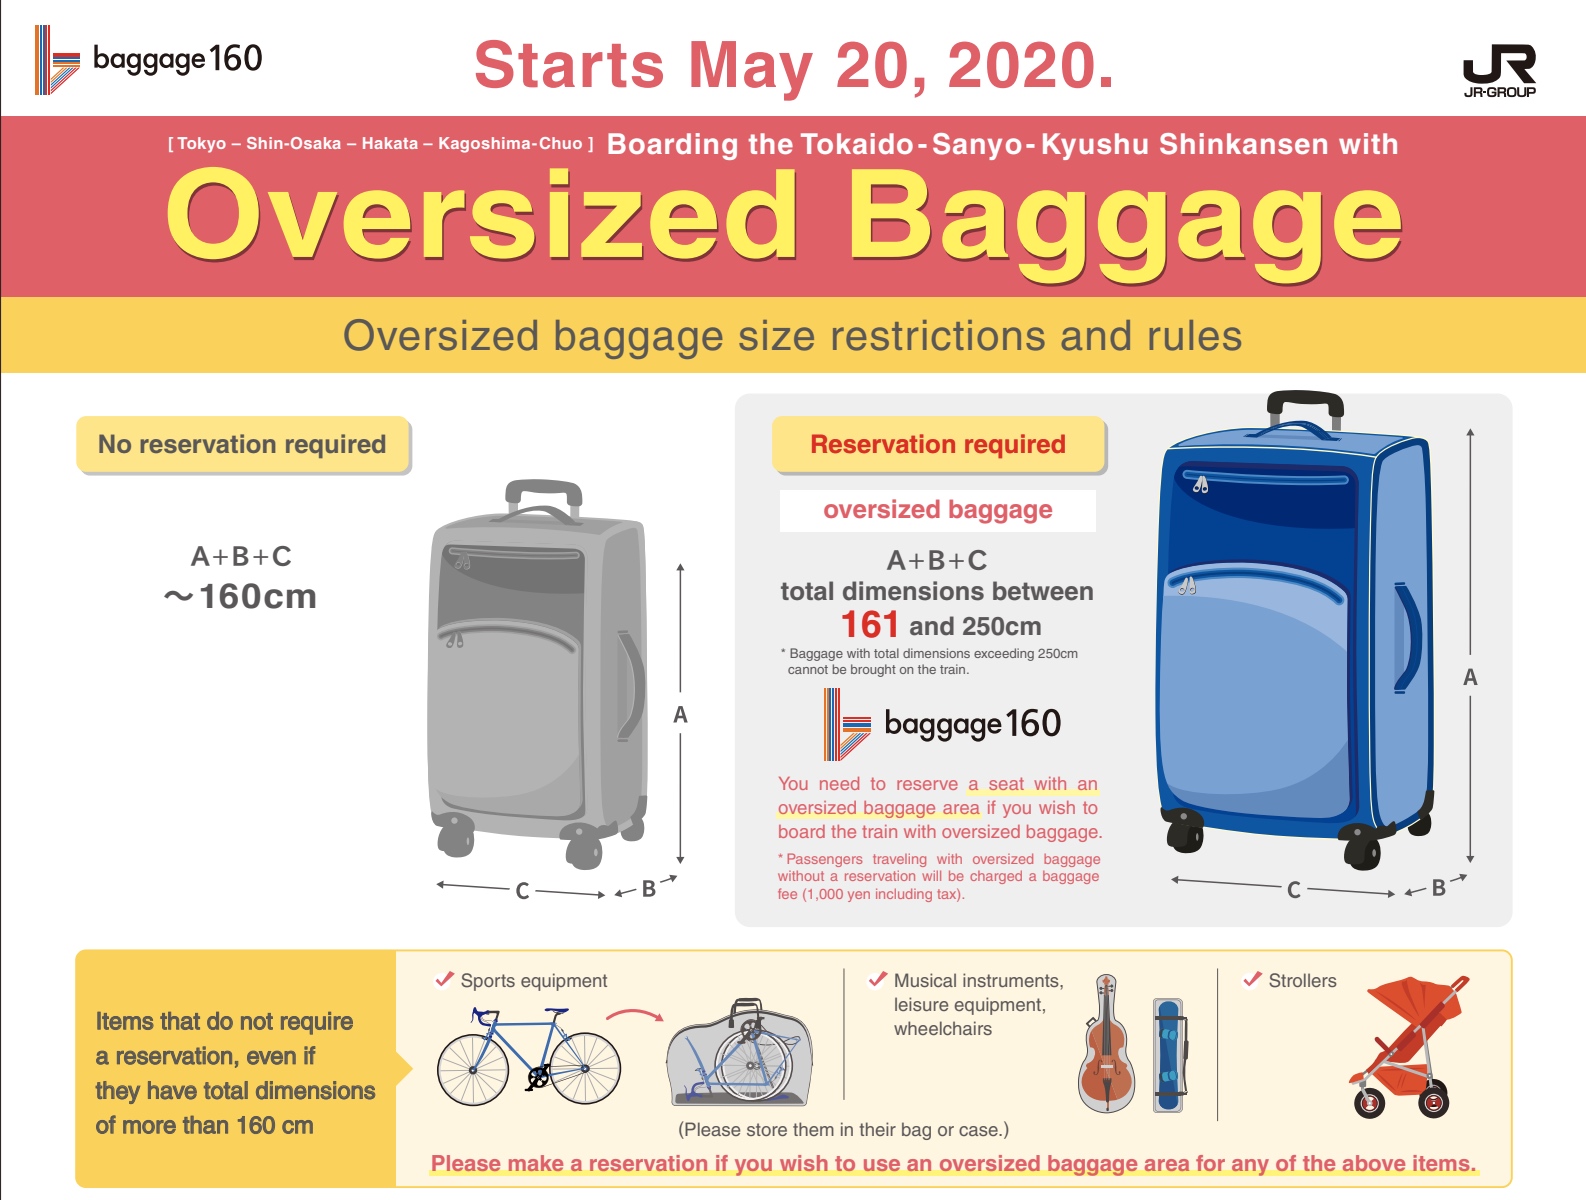 Klicken Sie auf dieses Bild für die genaueren Angaben zur neuen Gepäck-Regel.